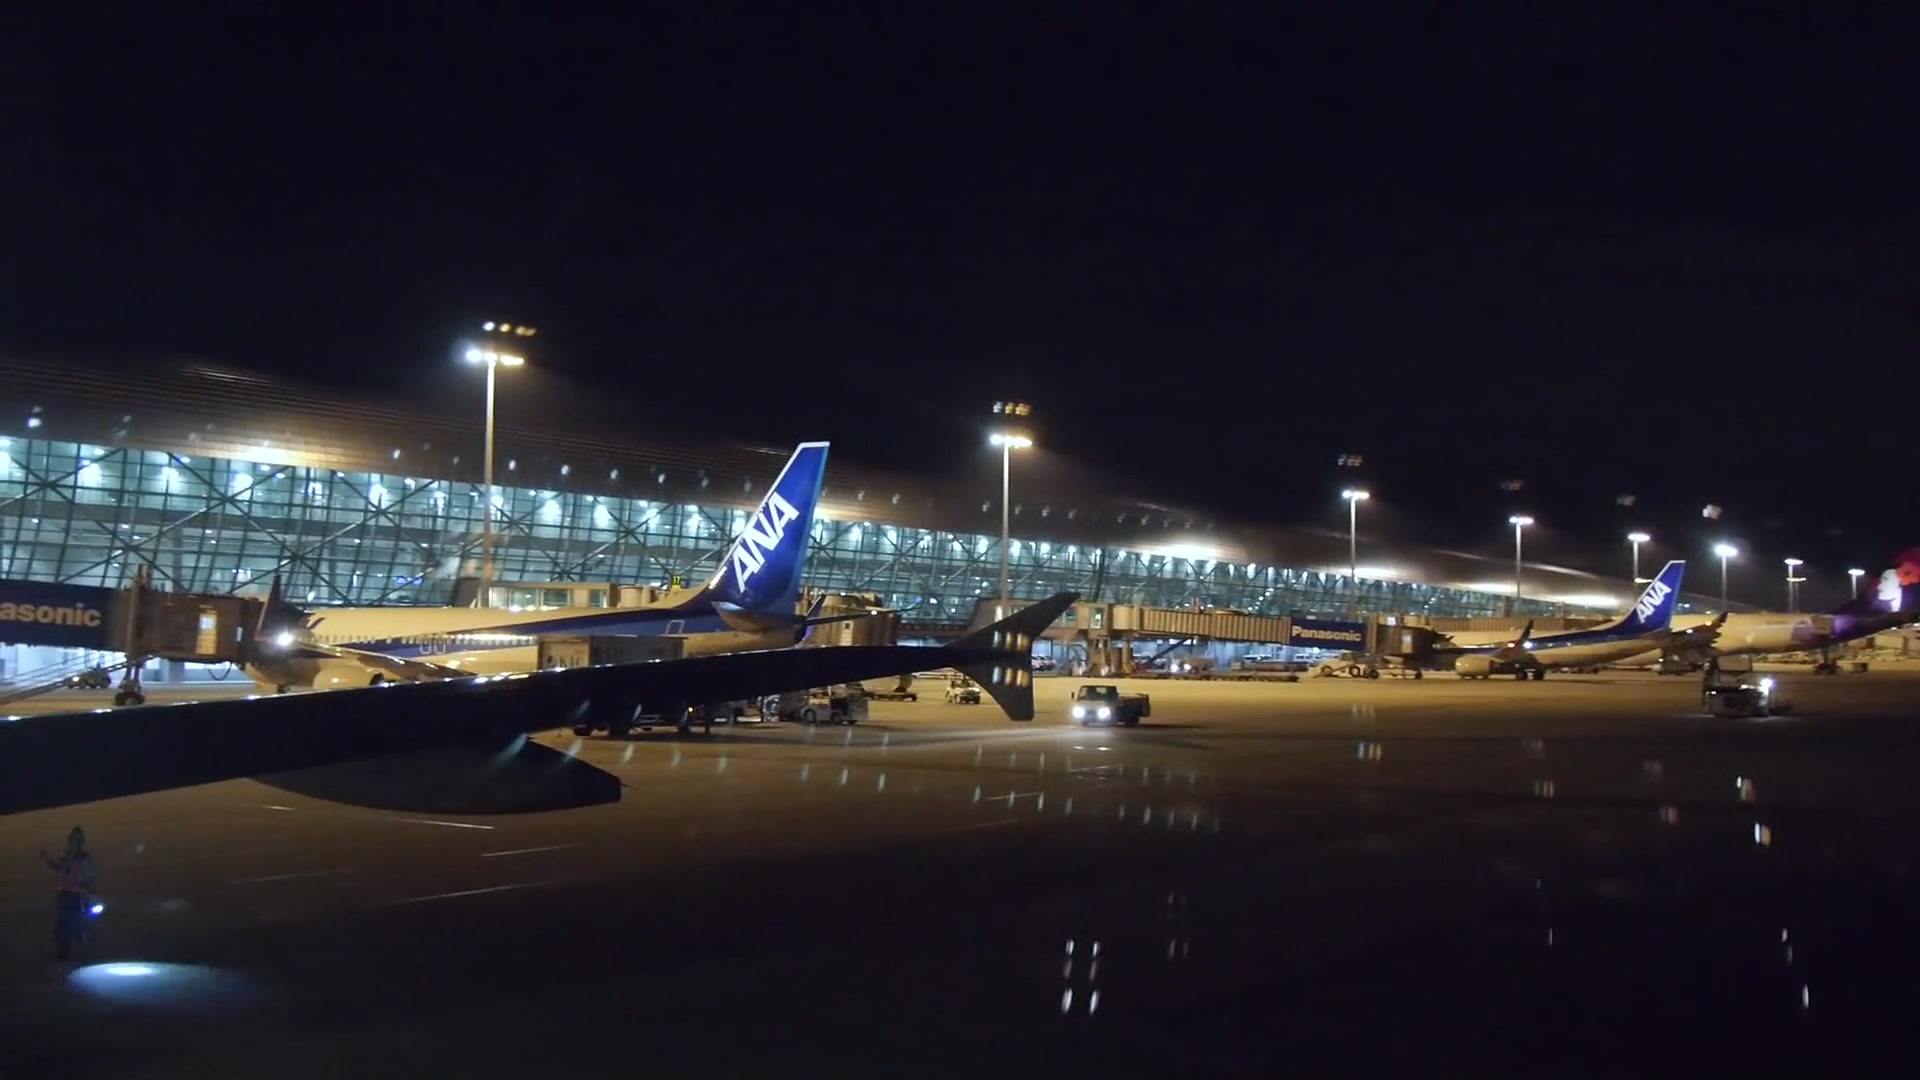 机场夜景 真实图片